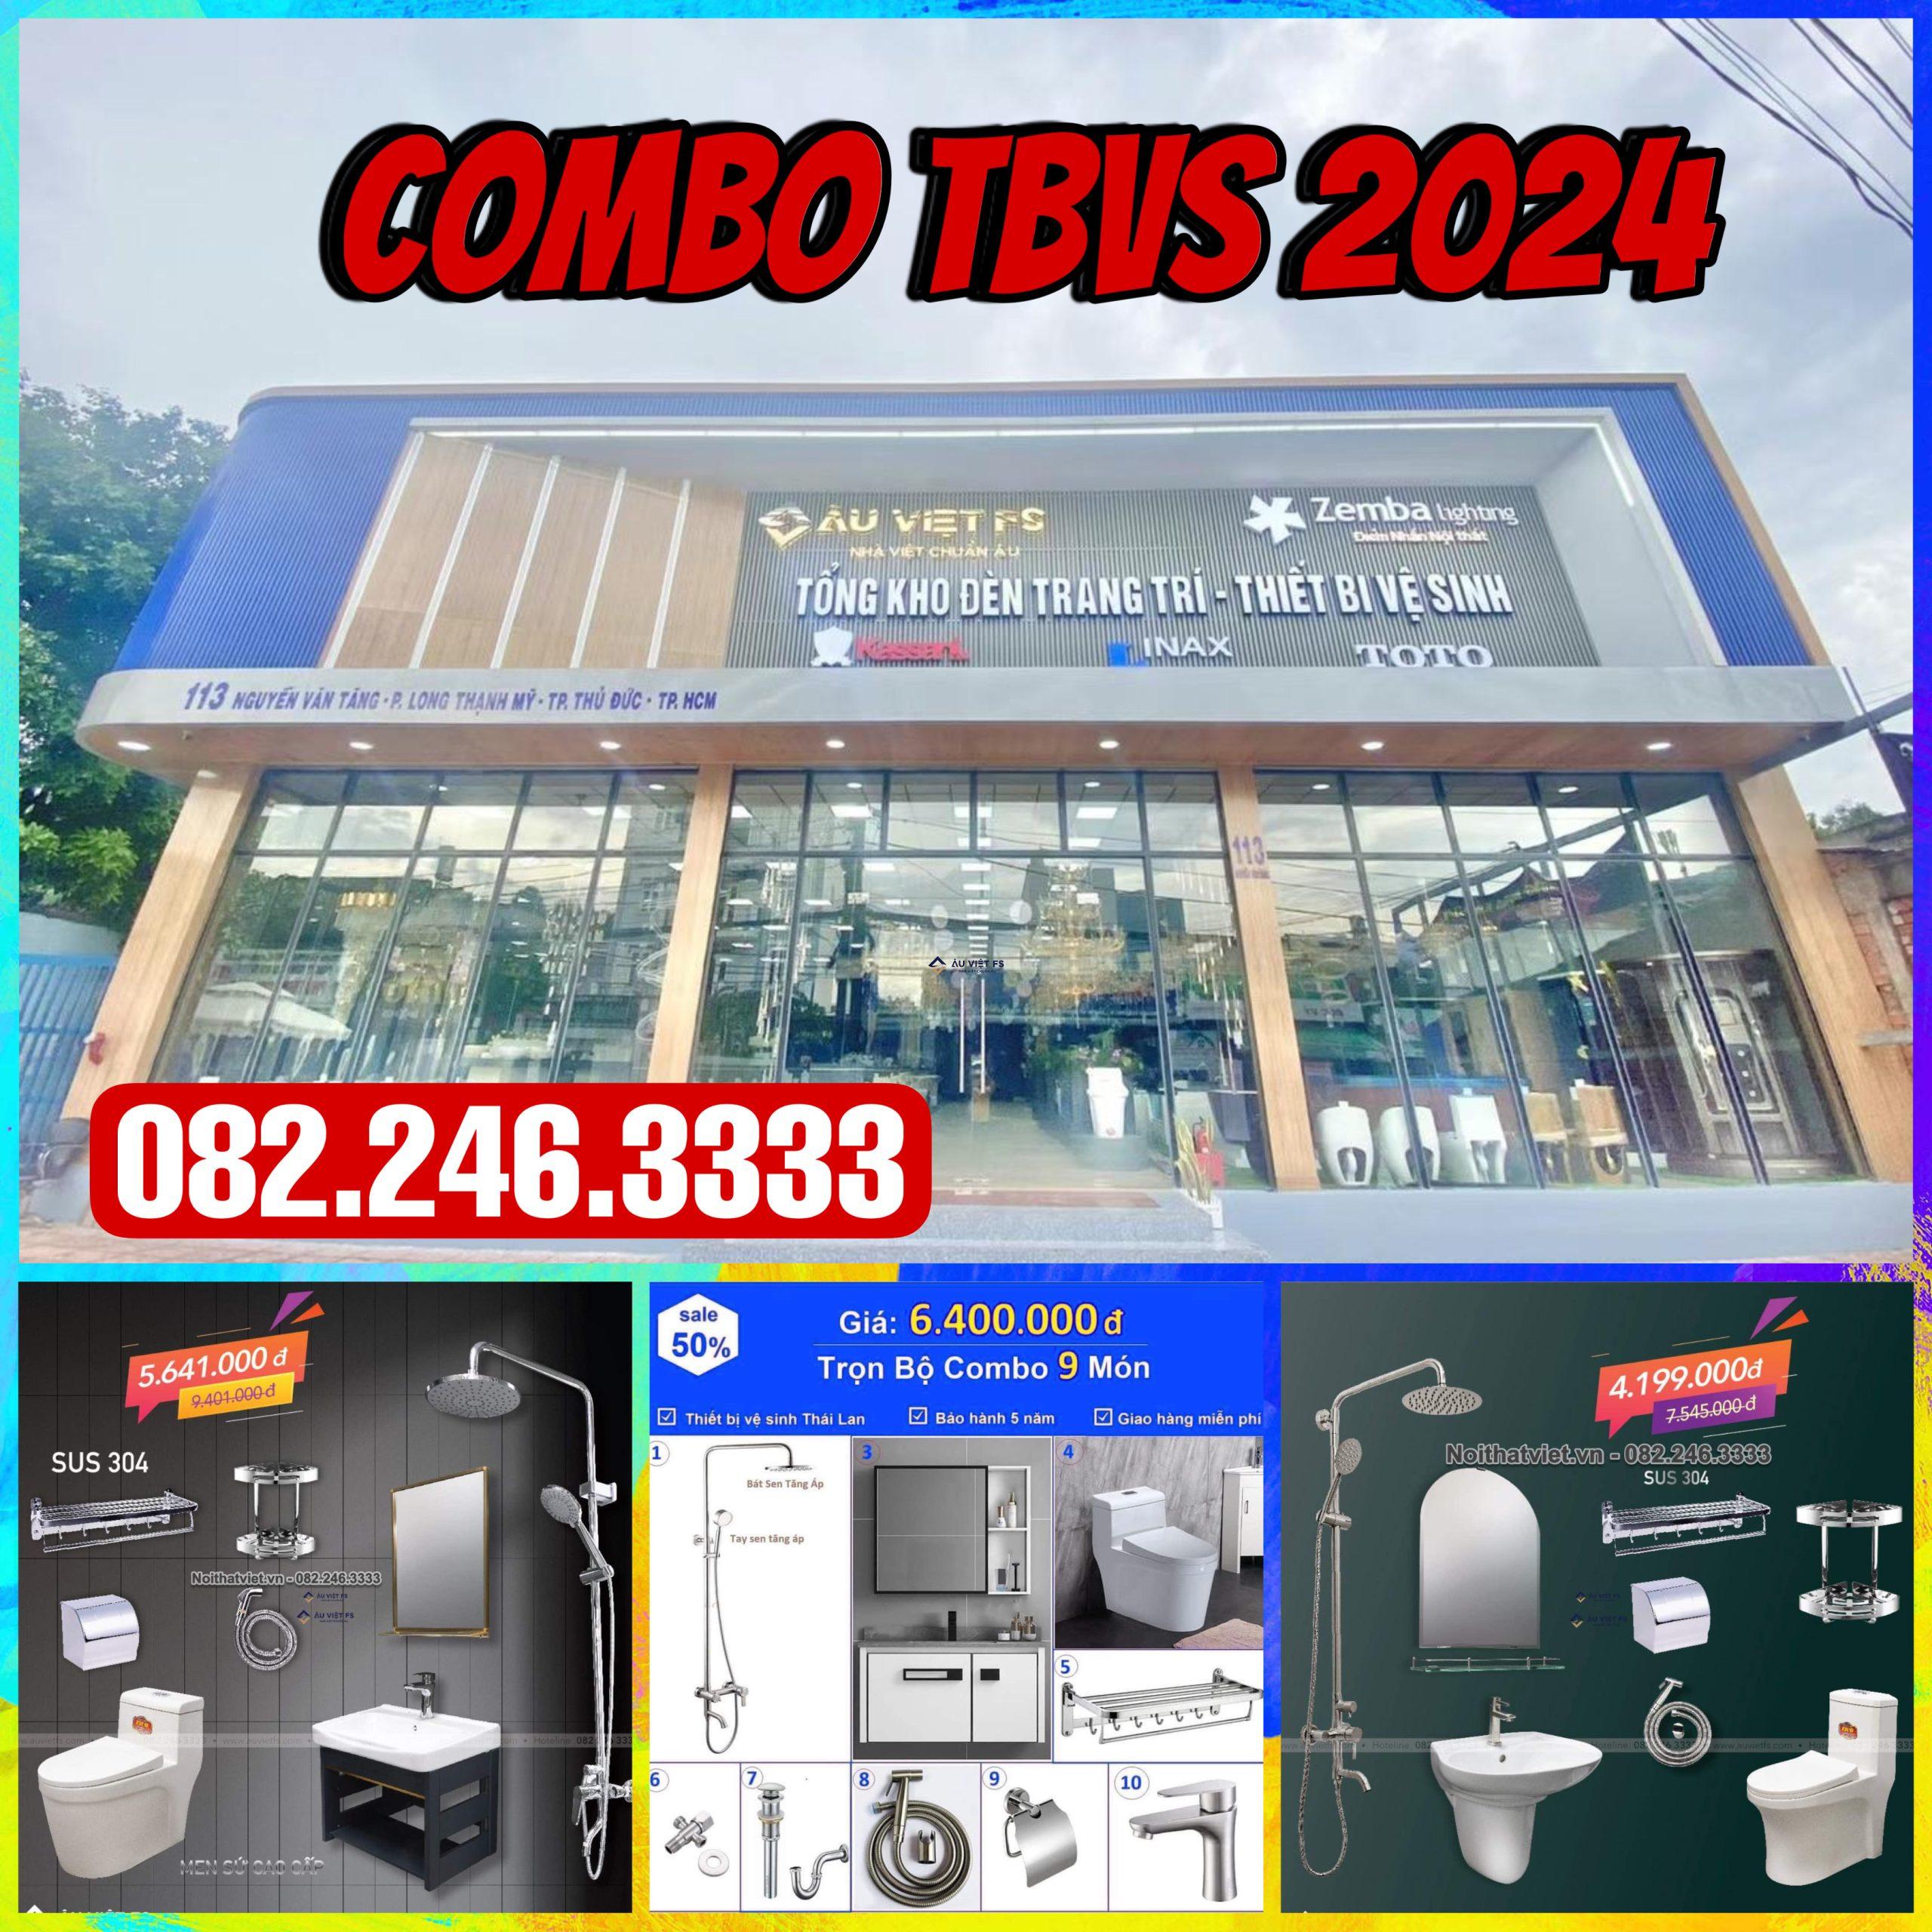 Combo thiết bị vệ sinh, Combo thiết bị vệ sinh 2024, Combo thiết bị vệ sinh nhà hàng, Combo thiết bị vệ sinh Khách sạn, Combo thiết bị vệ sinh Homestay, Combo thiết bị vệ sinh giá rẻ, Thiết bị vệ sinh, Combo Inax, Combo TOTO, Combo Viglacera, Combo TTcera